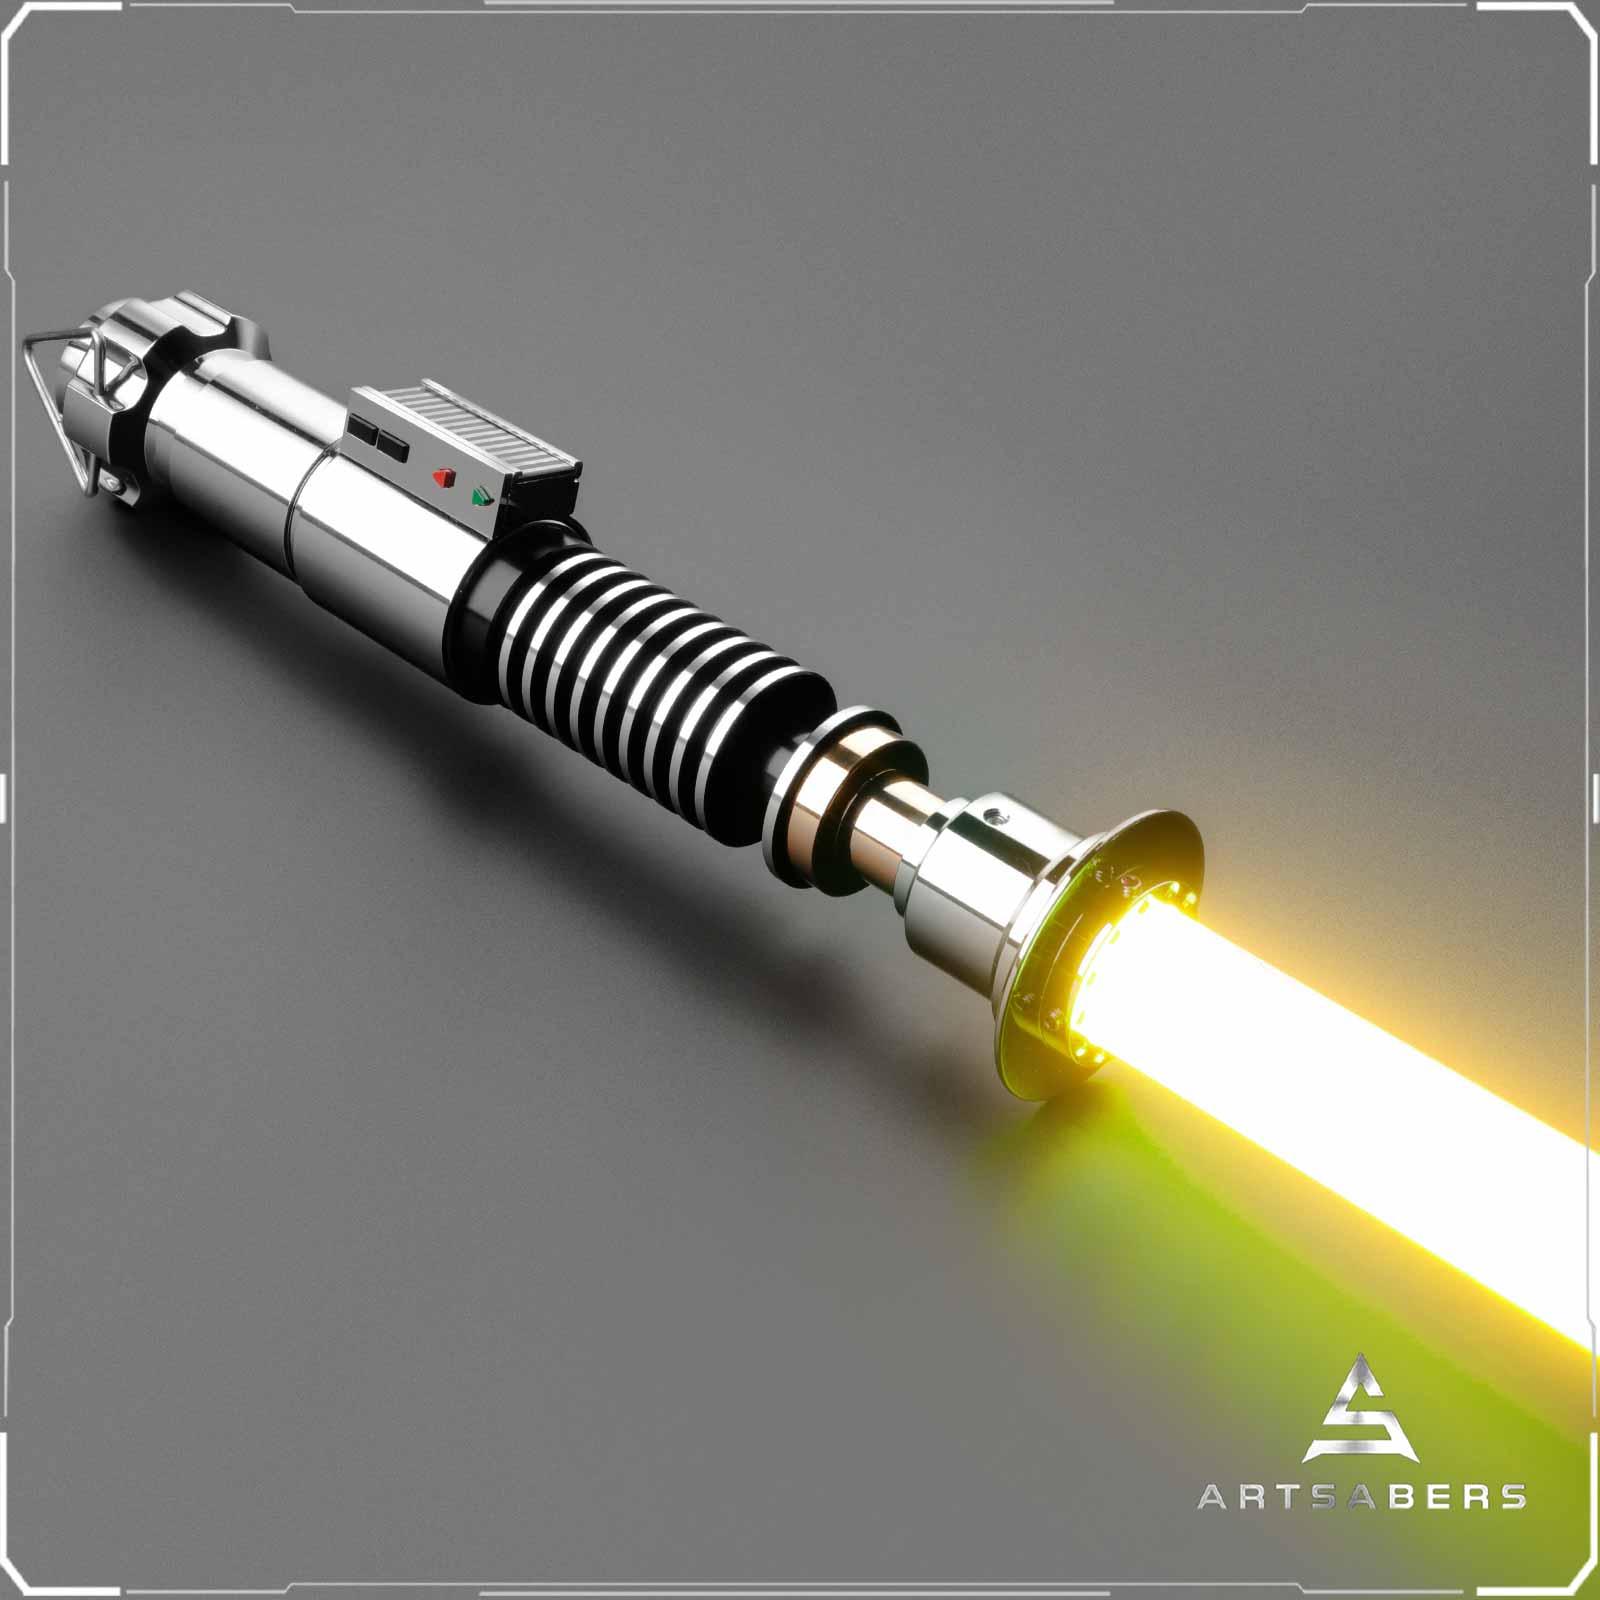 Luke Skywalker ROTJ Lightsaber Star Wars Lightsaber Neopixel Blade ARTSABERS 